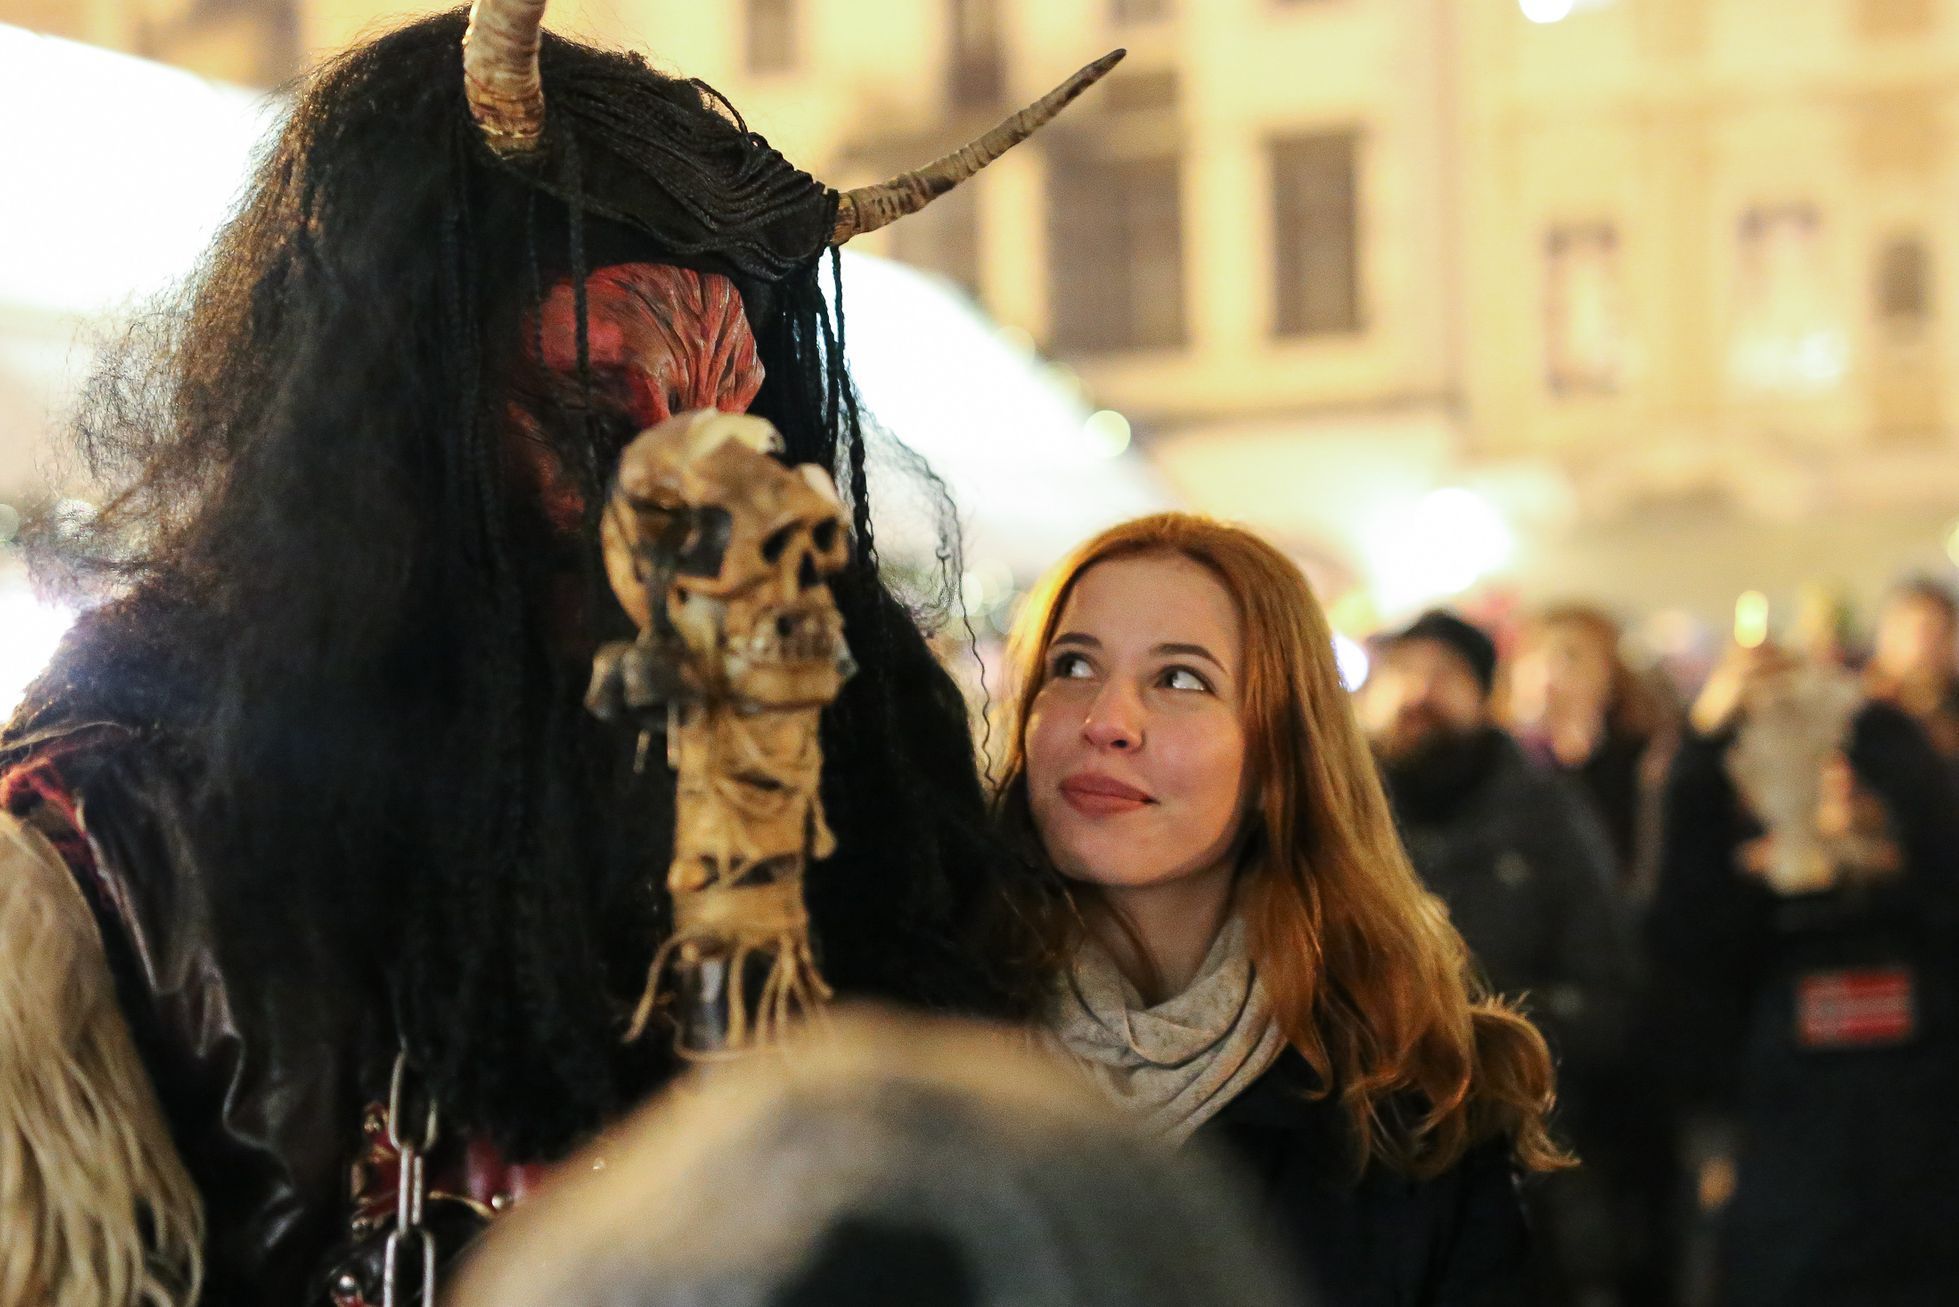 Čerti a Mikuláš 5. prosince 2016 na Staroměstském náměstí